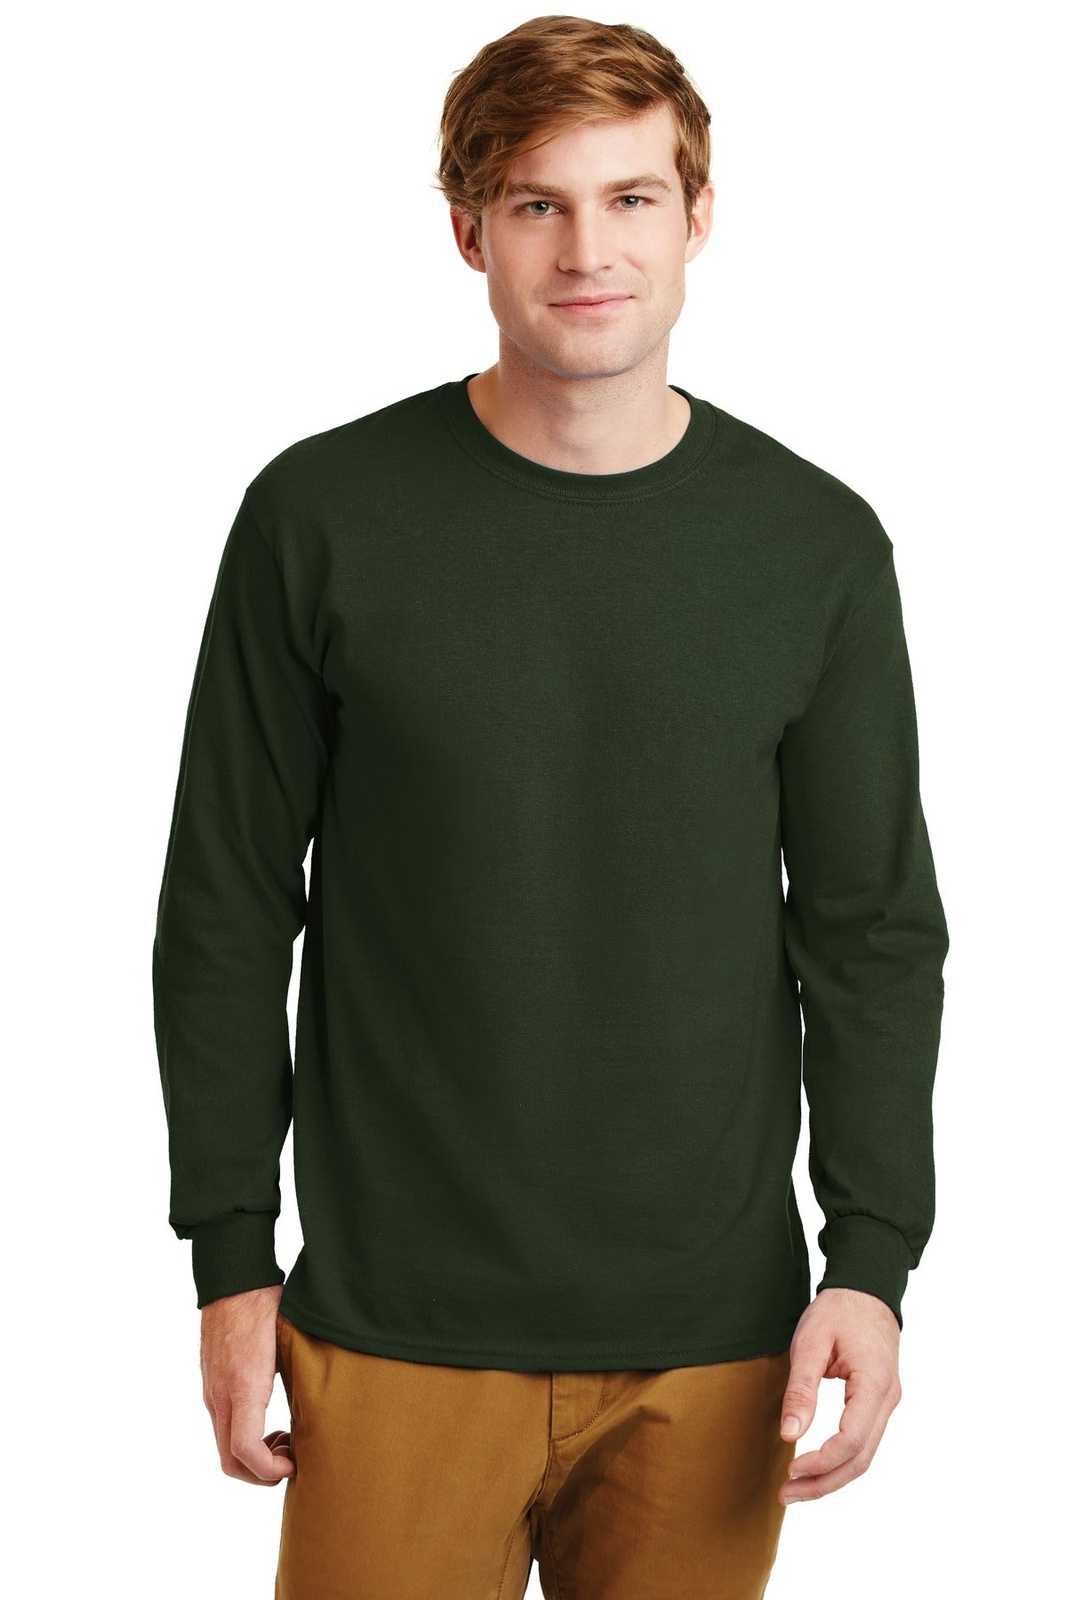 Gildan G2400 Ultra Cotton 100% Cotton Long Sleeve T-Shirt - Forest Green - HIT a Double